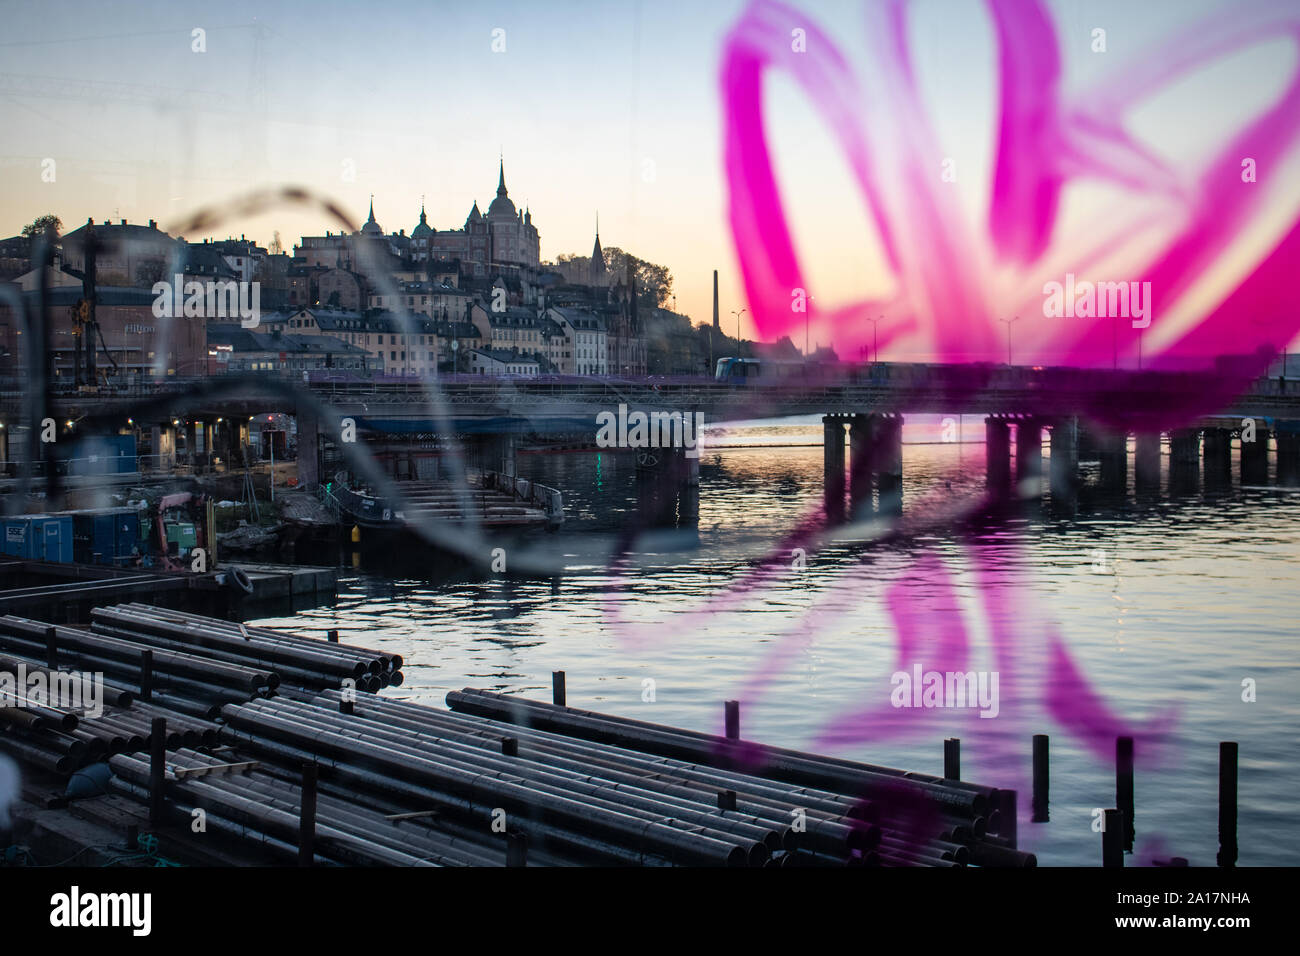 Toits de Stockholm shot d'un pont par une fenêtre avec graffiti Banque D'Images